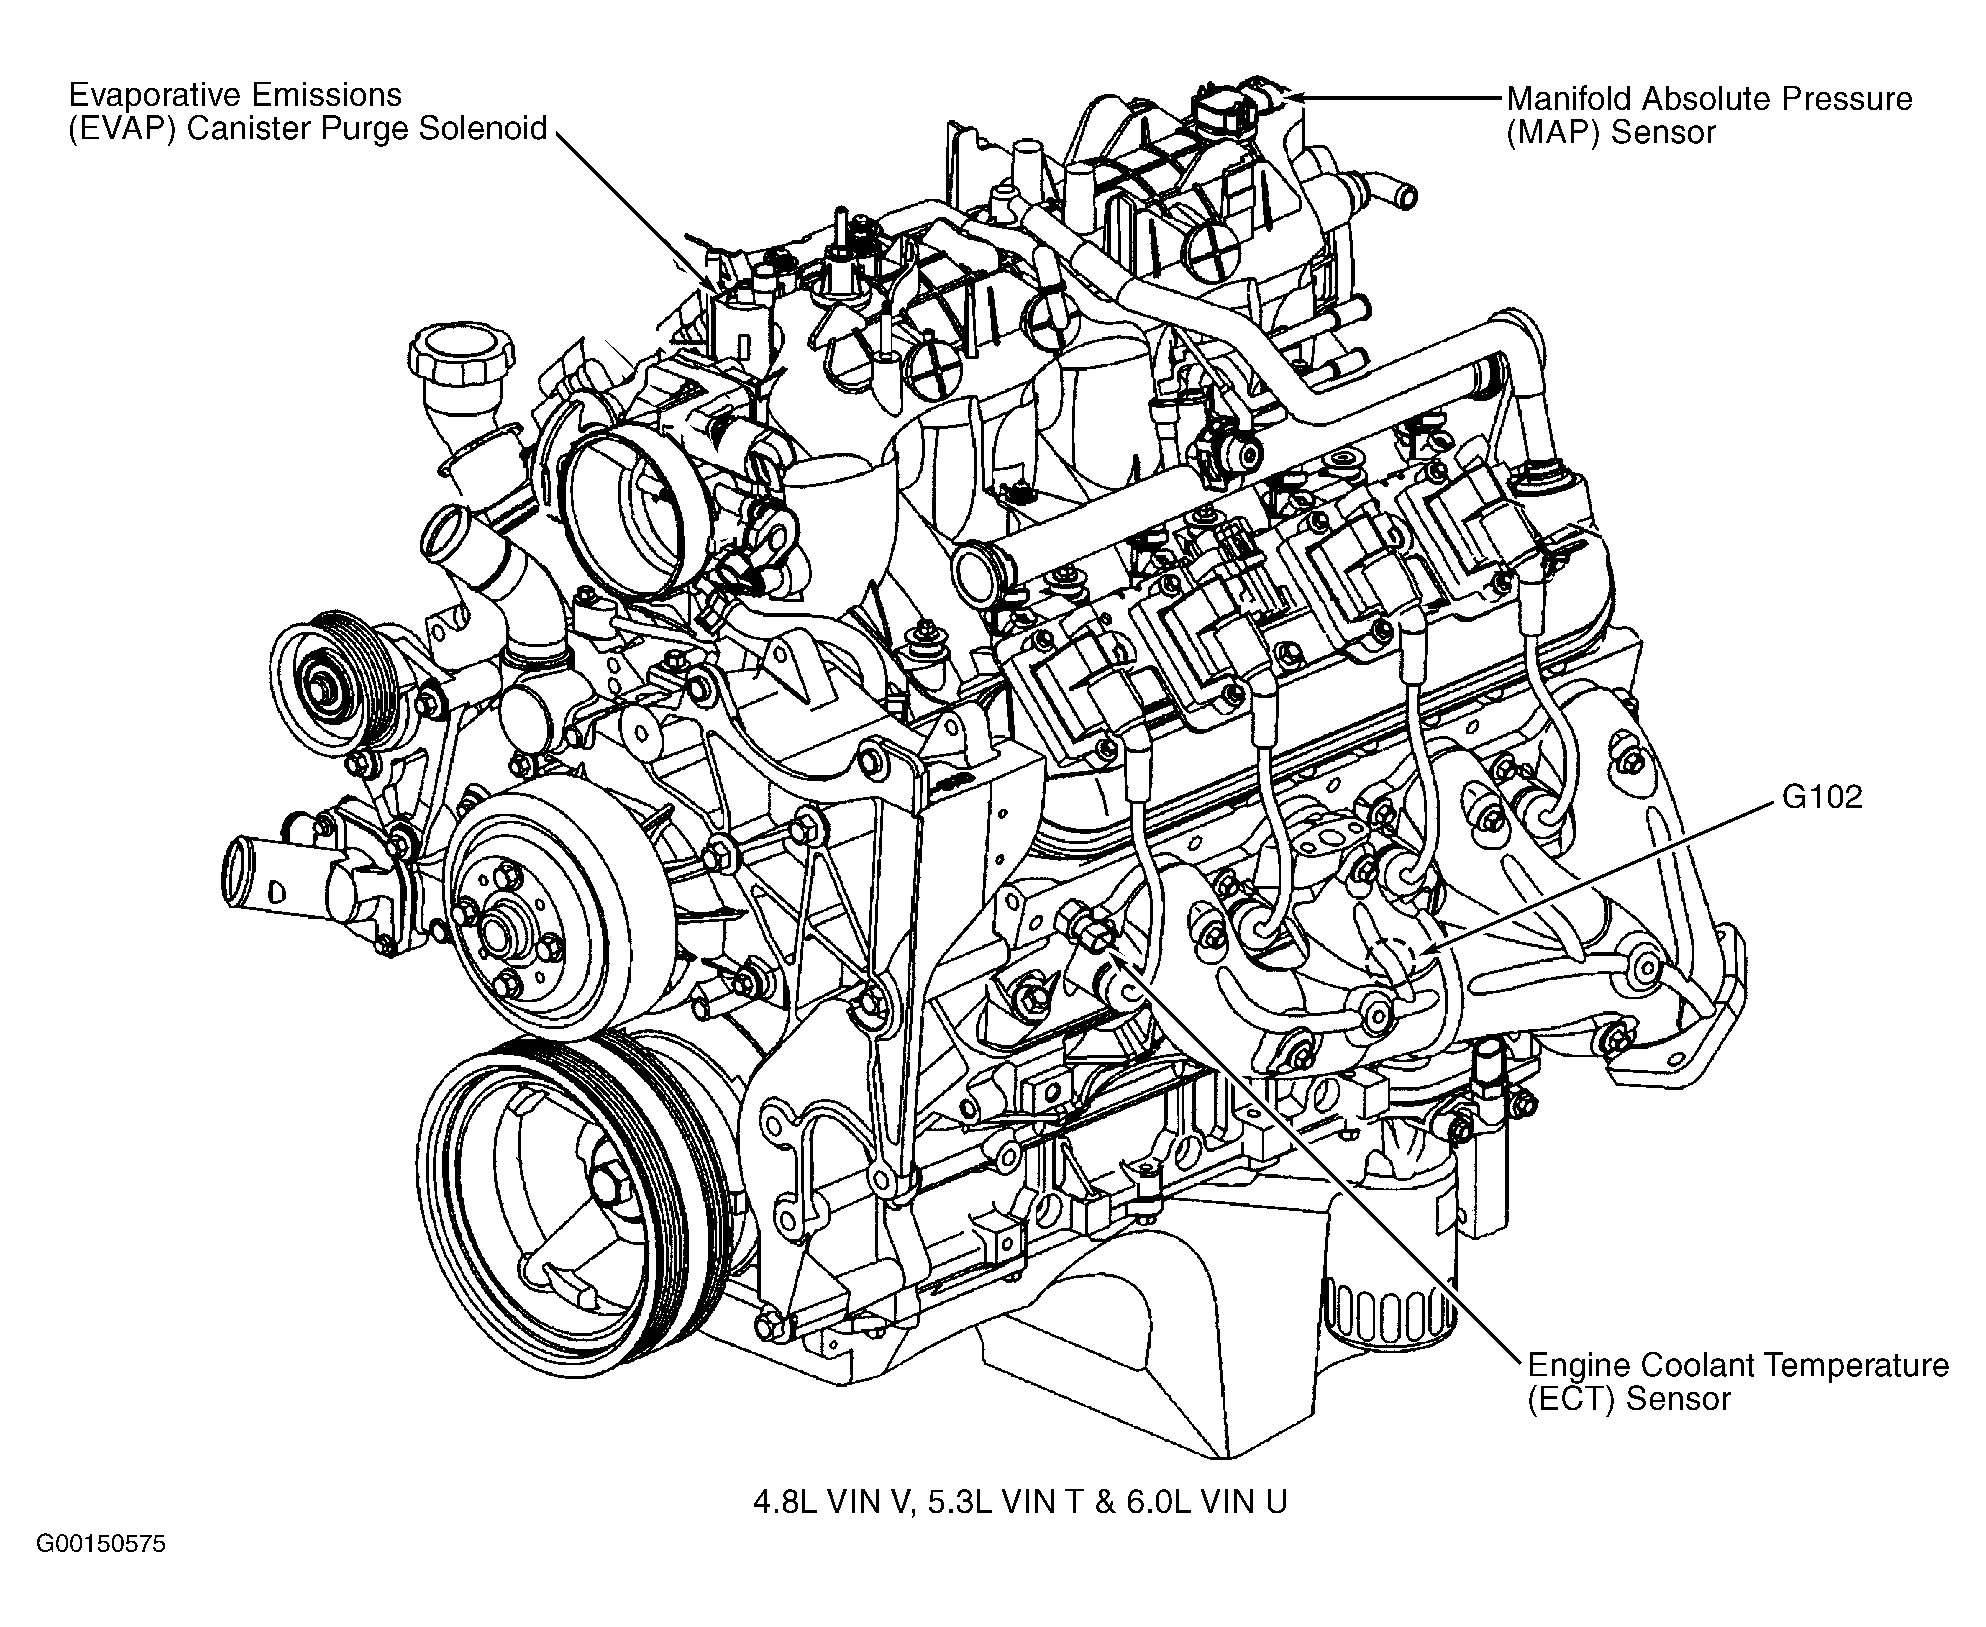 Chevrolet Avalanche 1500 2003 - Component Locations -  Left Side Of Engine (4.8L VIN V, 5.3L VIN T & 6.0L VIN U)